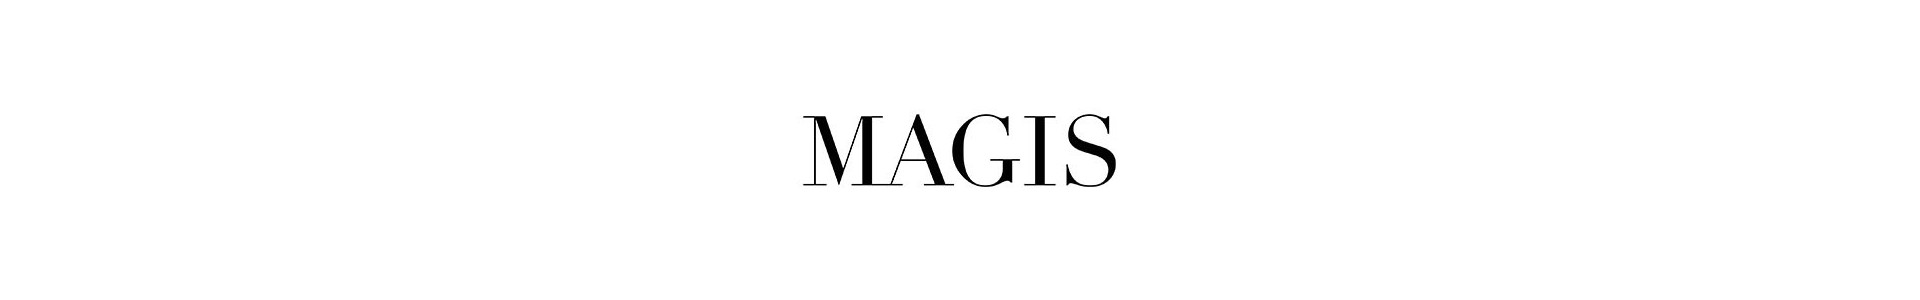 Magis. Muebles de diseño para hogar y contract. Tienda Online de Muebles Lluesma